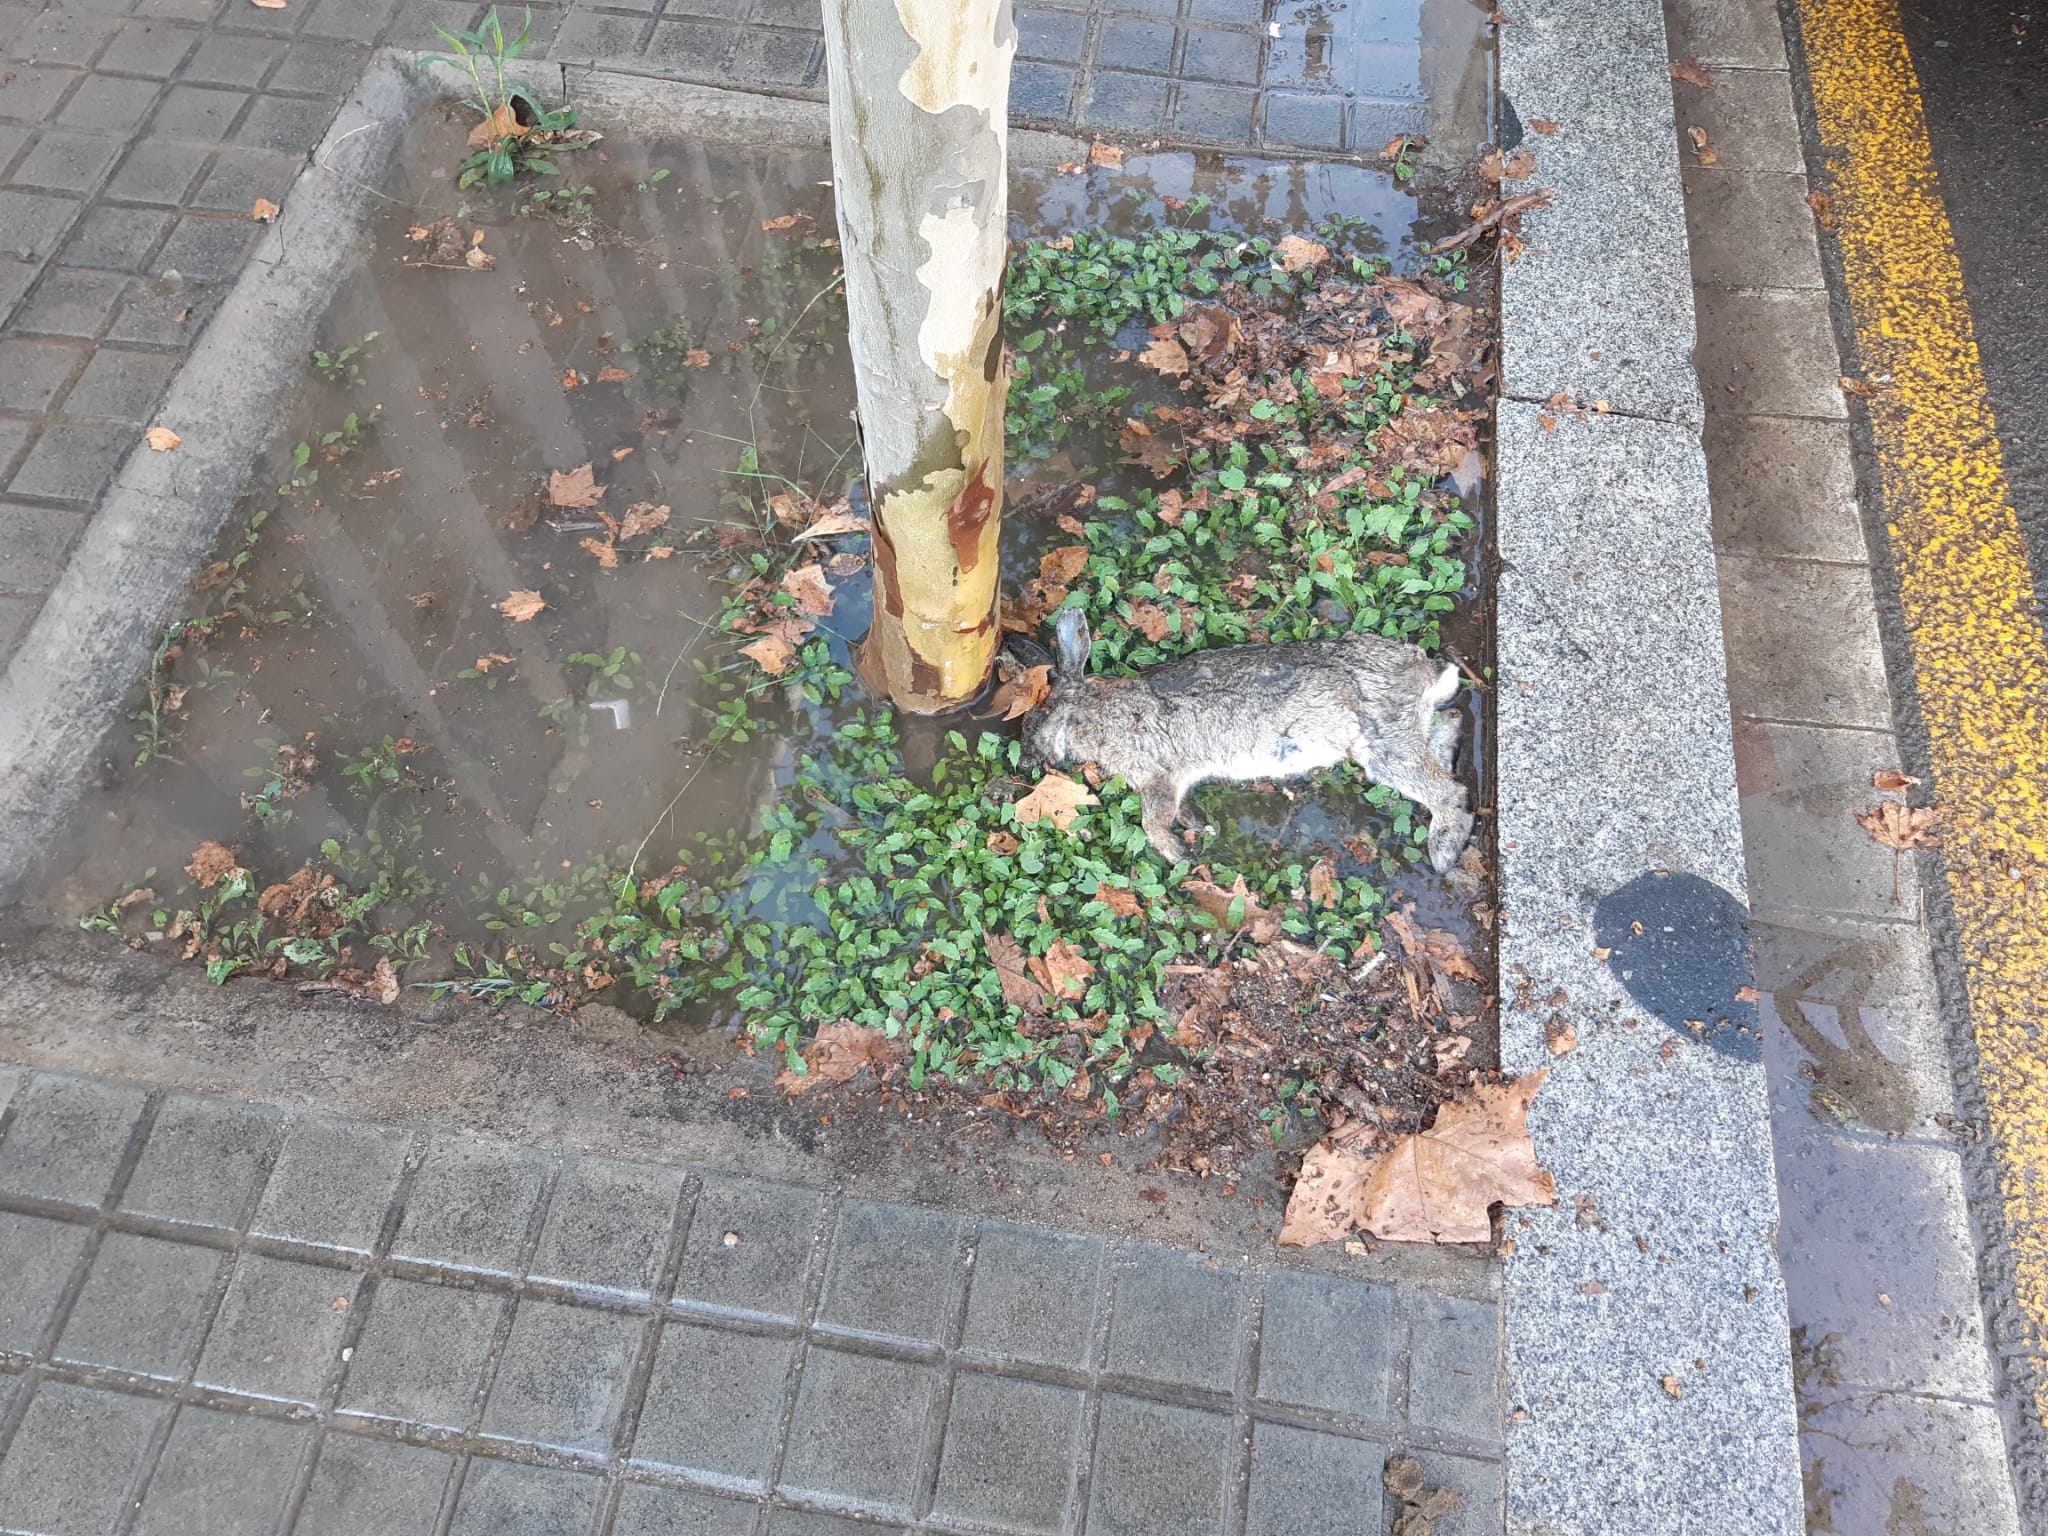 Apareix un conill mort en un escocell del carrer Perú de Barcelona